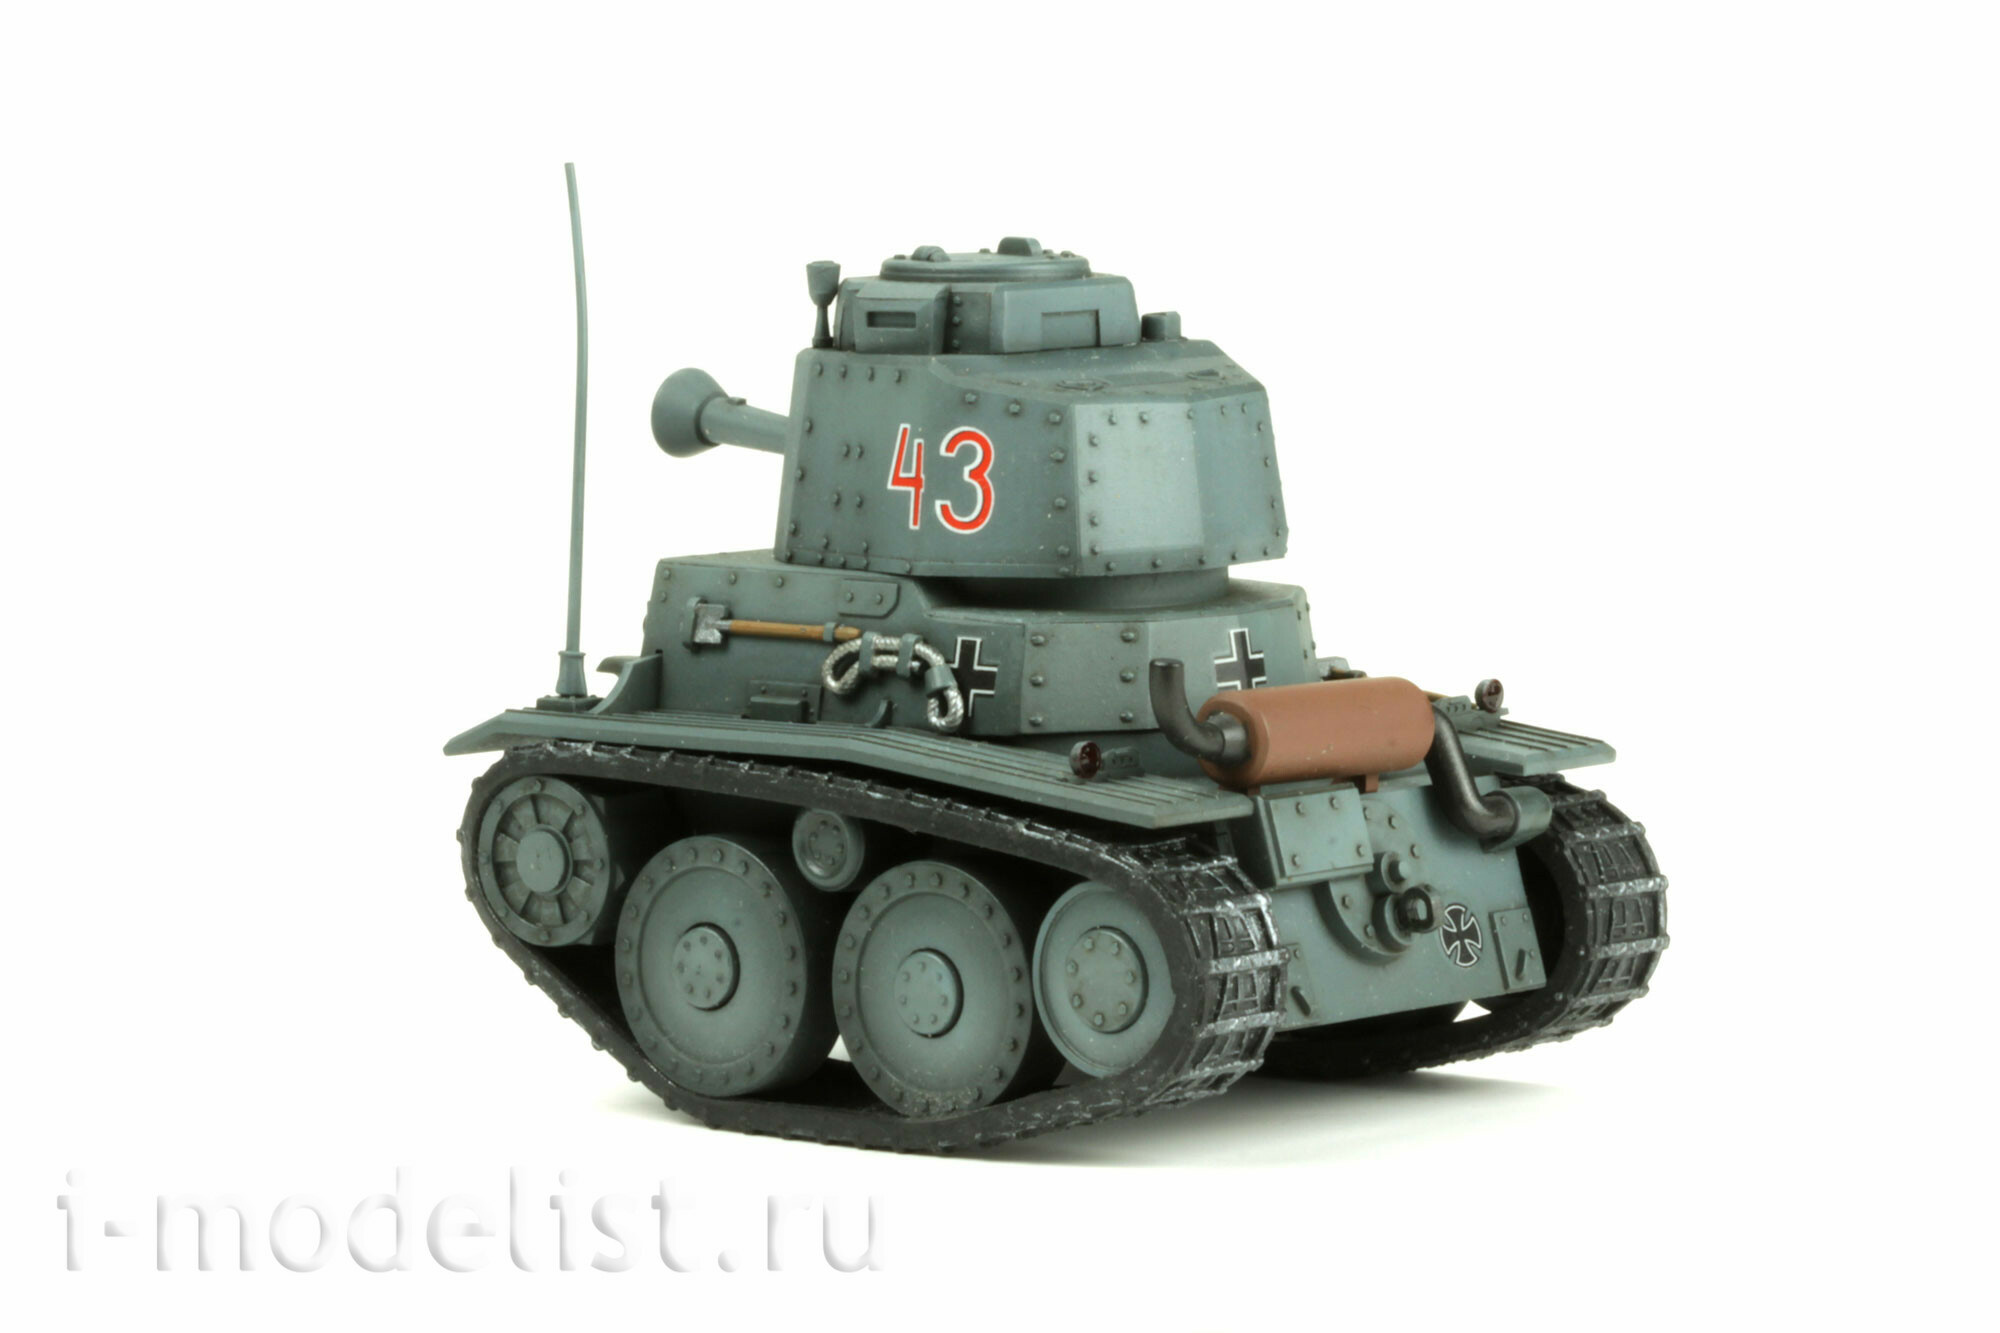 WWT-011 Meng Немецкий лёгкий танк Panzer LIGHT 38T